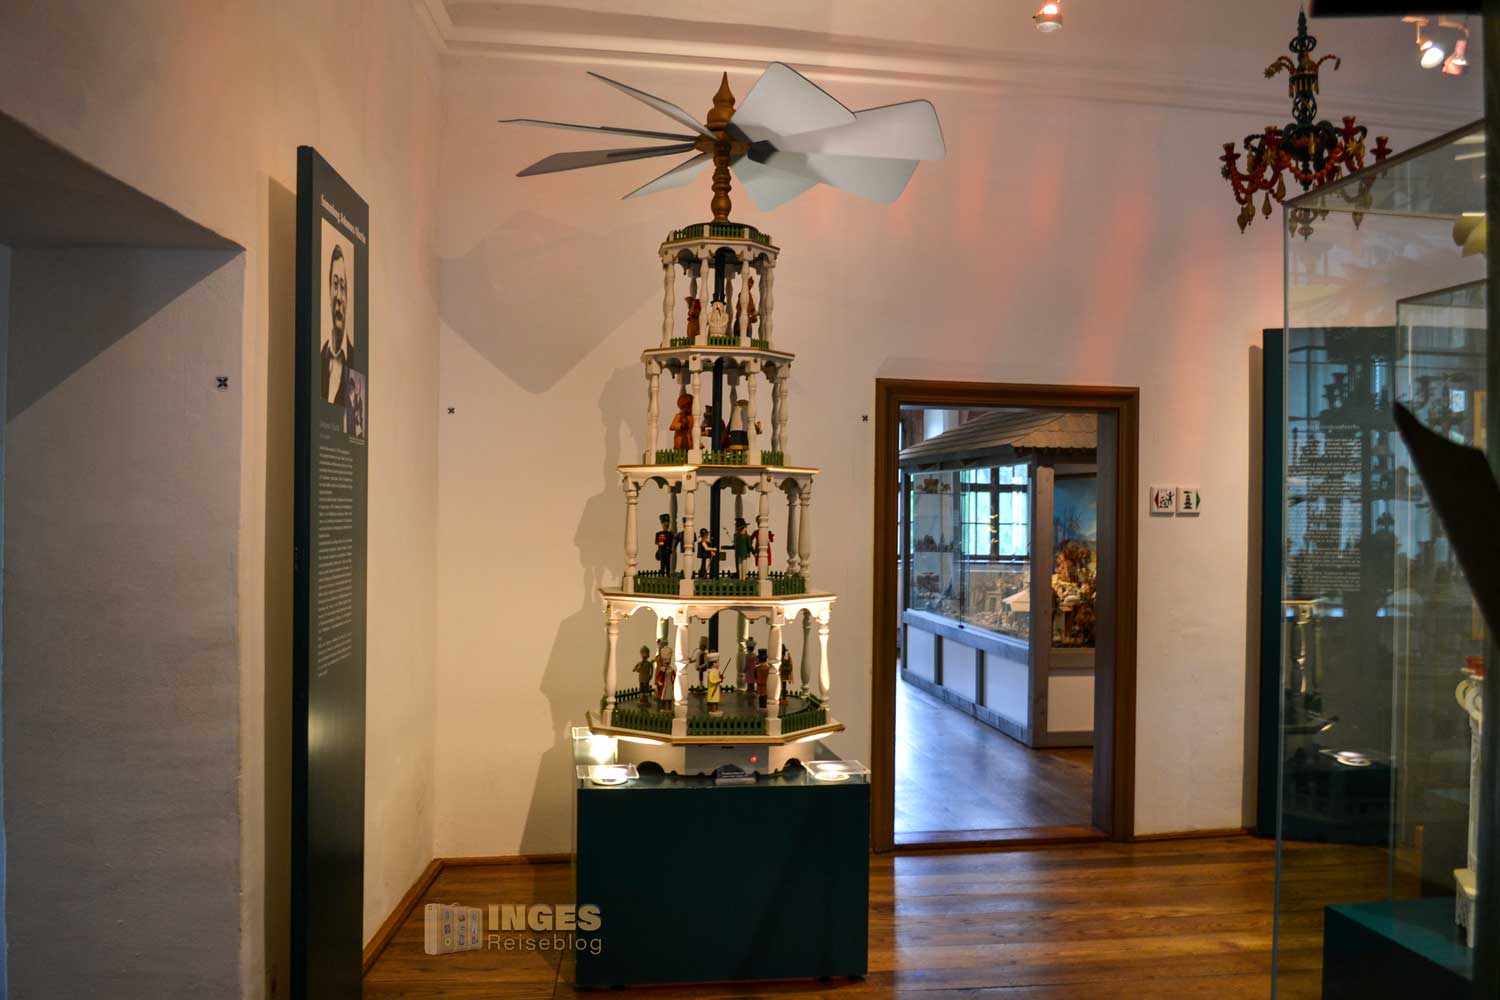 Weihnachts- und Spielzeugmuseum auf Burg Scharfenstein